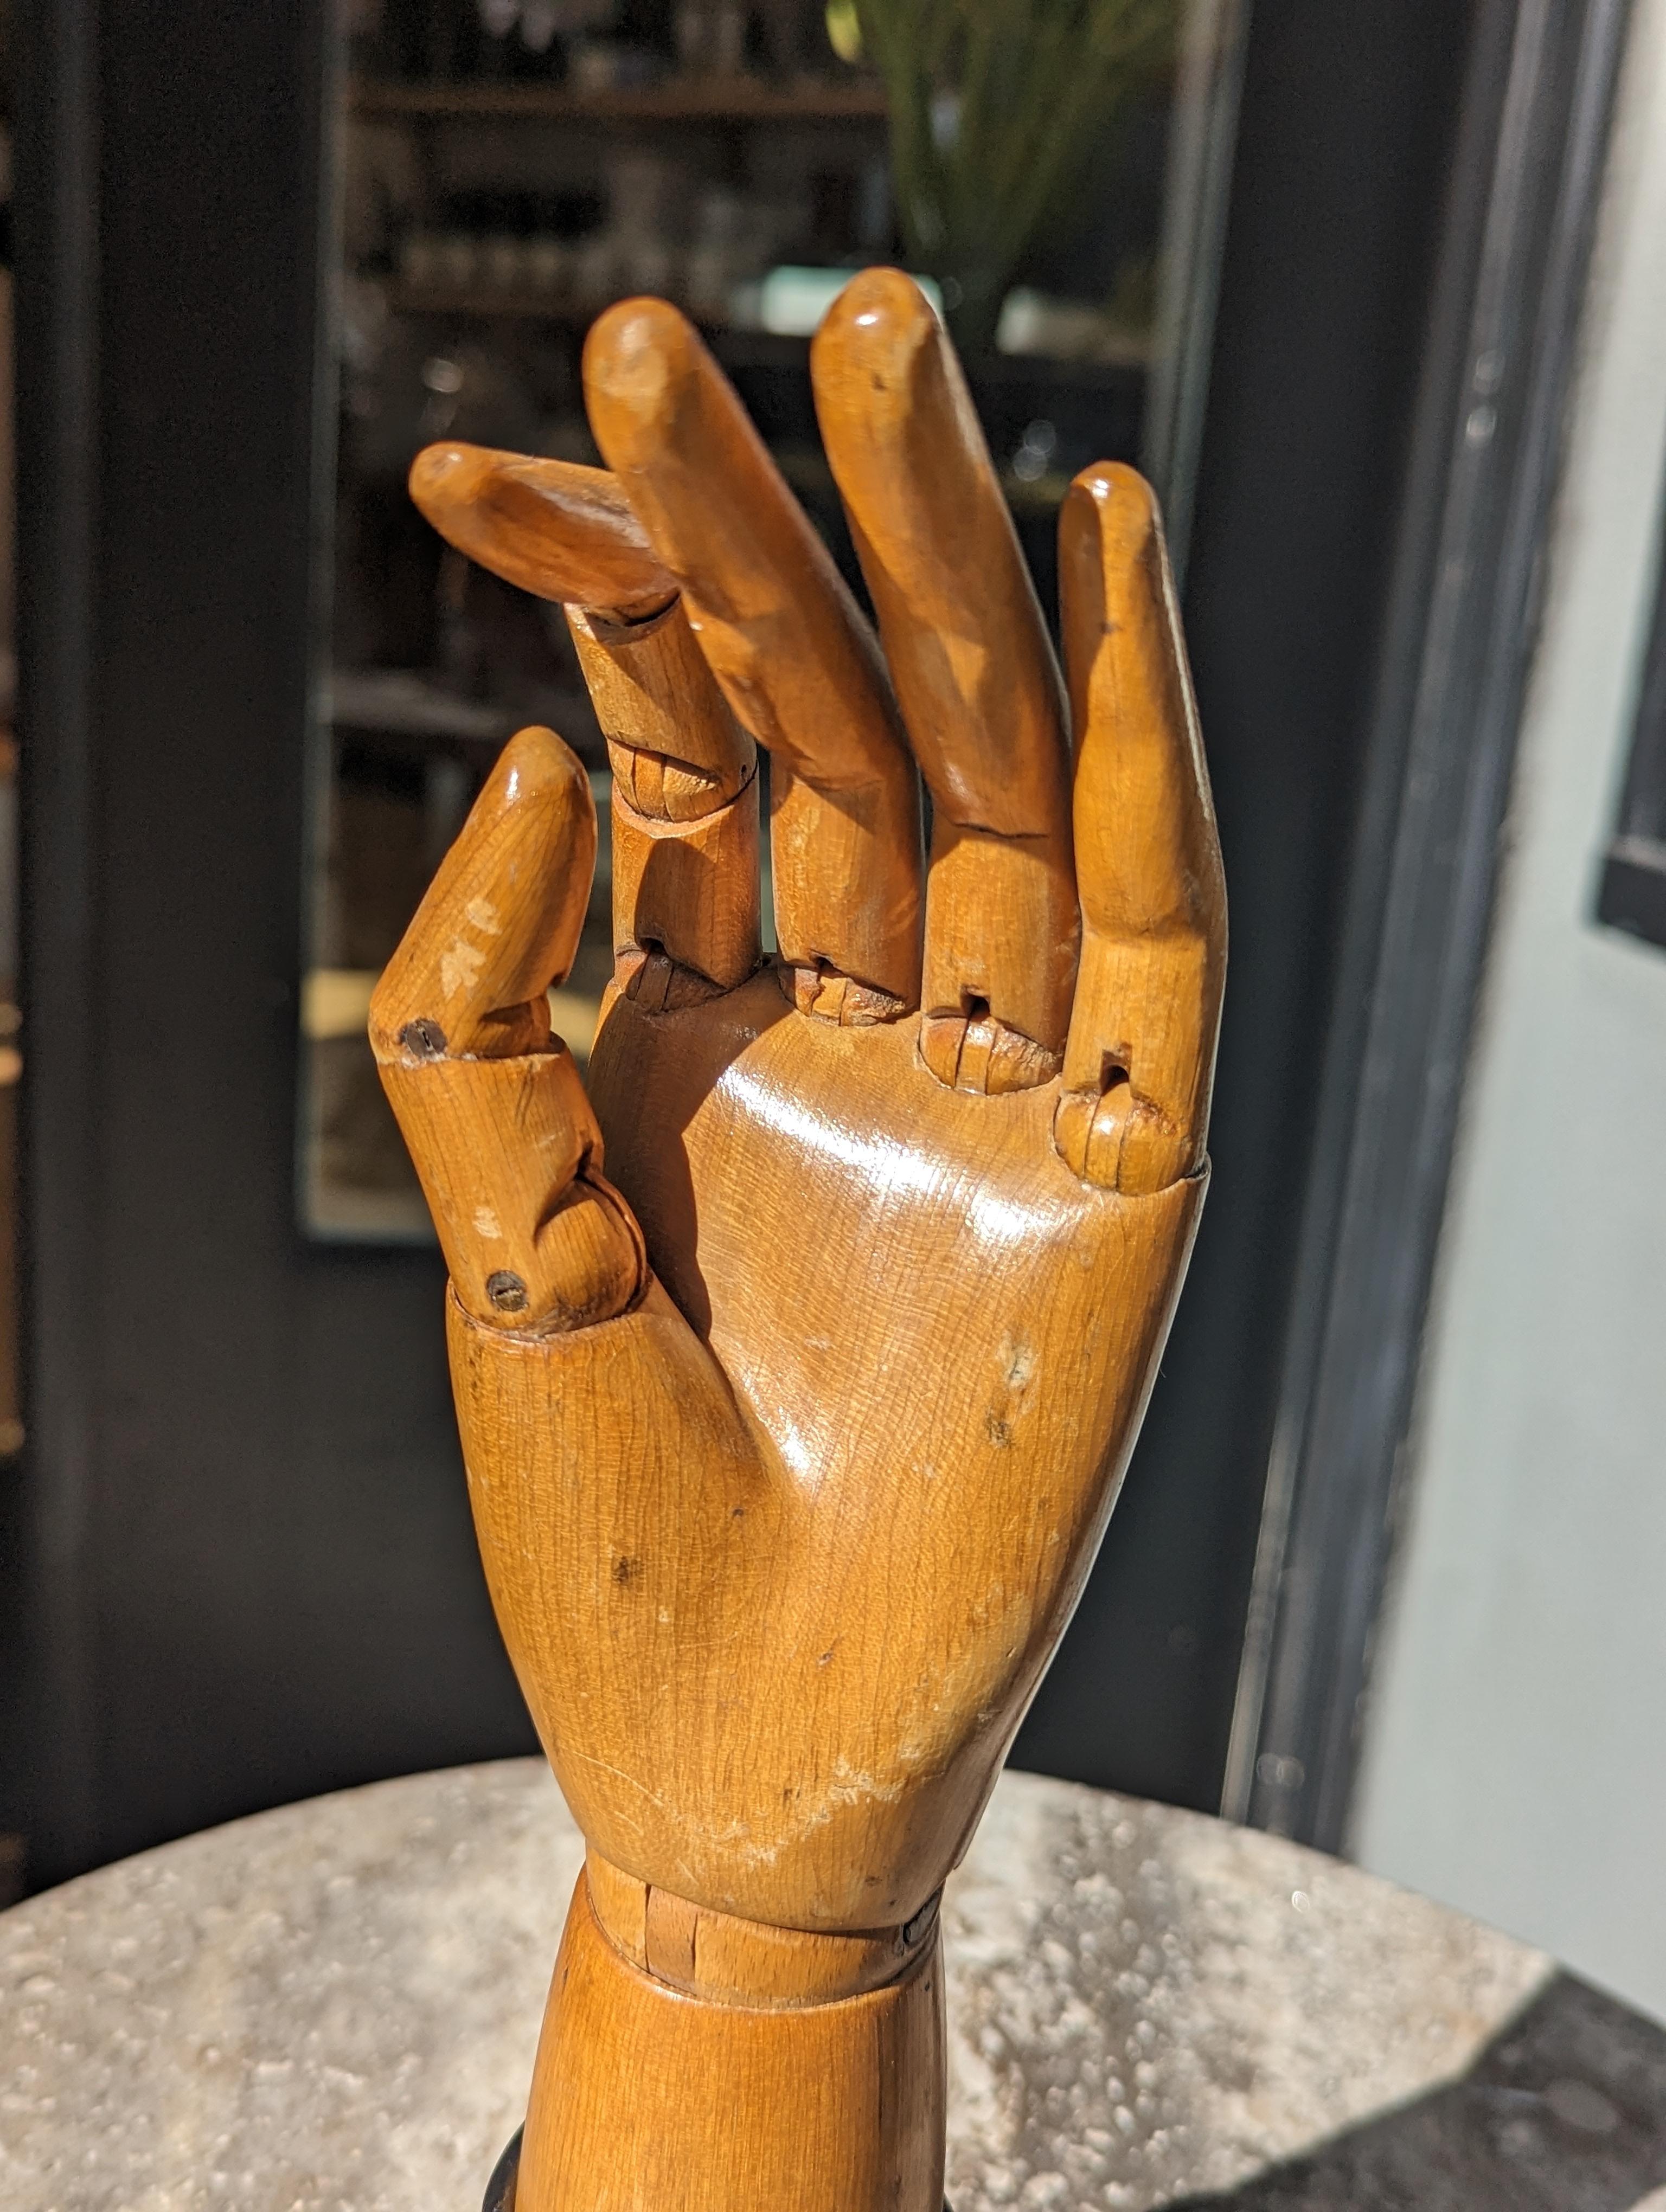 Exquisite C.1900 Articulated Wooden Hand auf Stand

Entfesseln Sie Ihre Kreativität oder fügen Sie Ihrem Raum einen Hauch von Geschichte hinzu mit diesen fesselnden antiken Holzhänden, die aus warmem Buchenholz geschnitzt sind und deren zeitloses